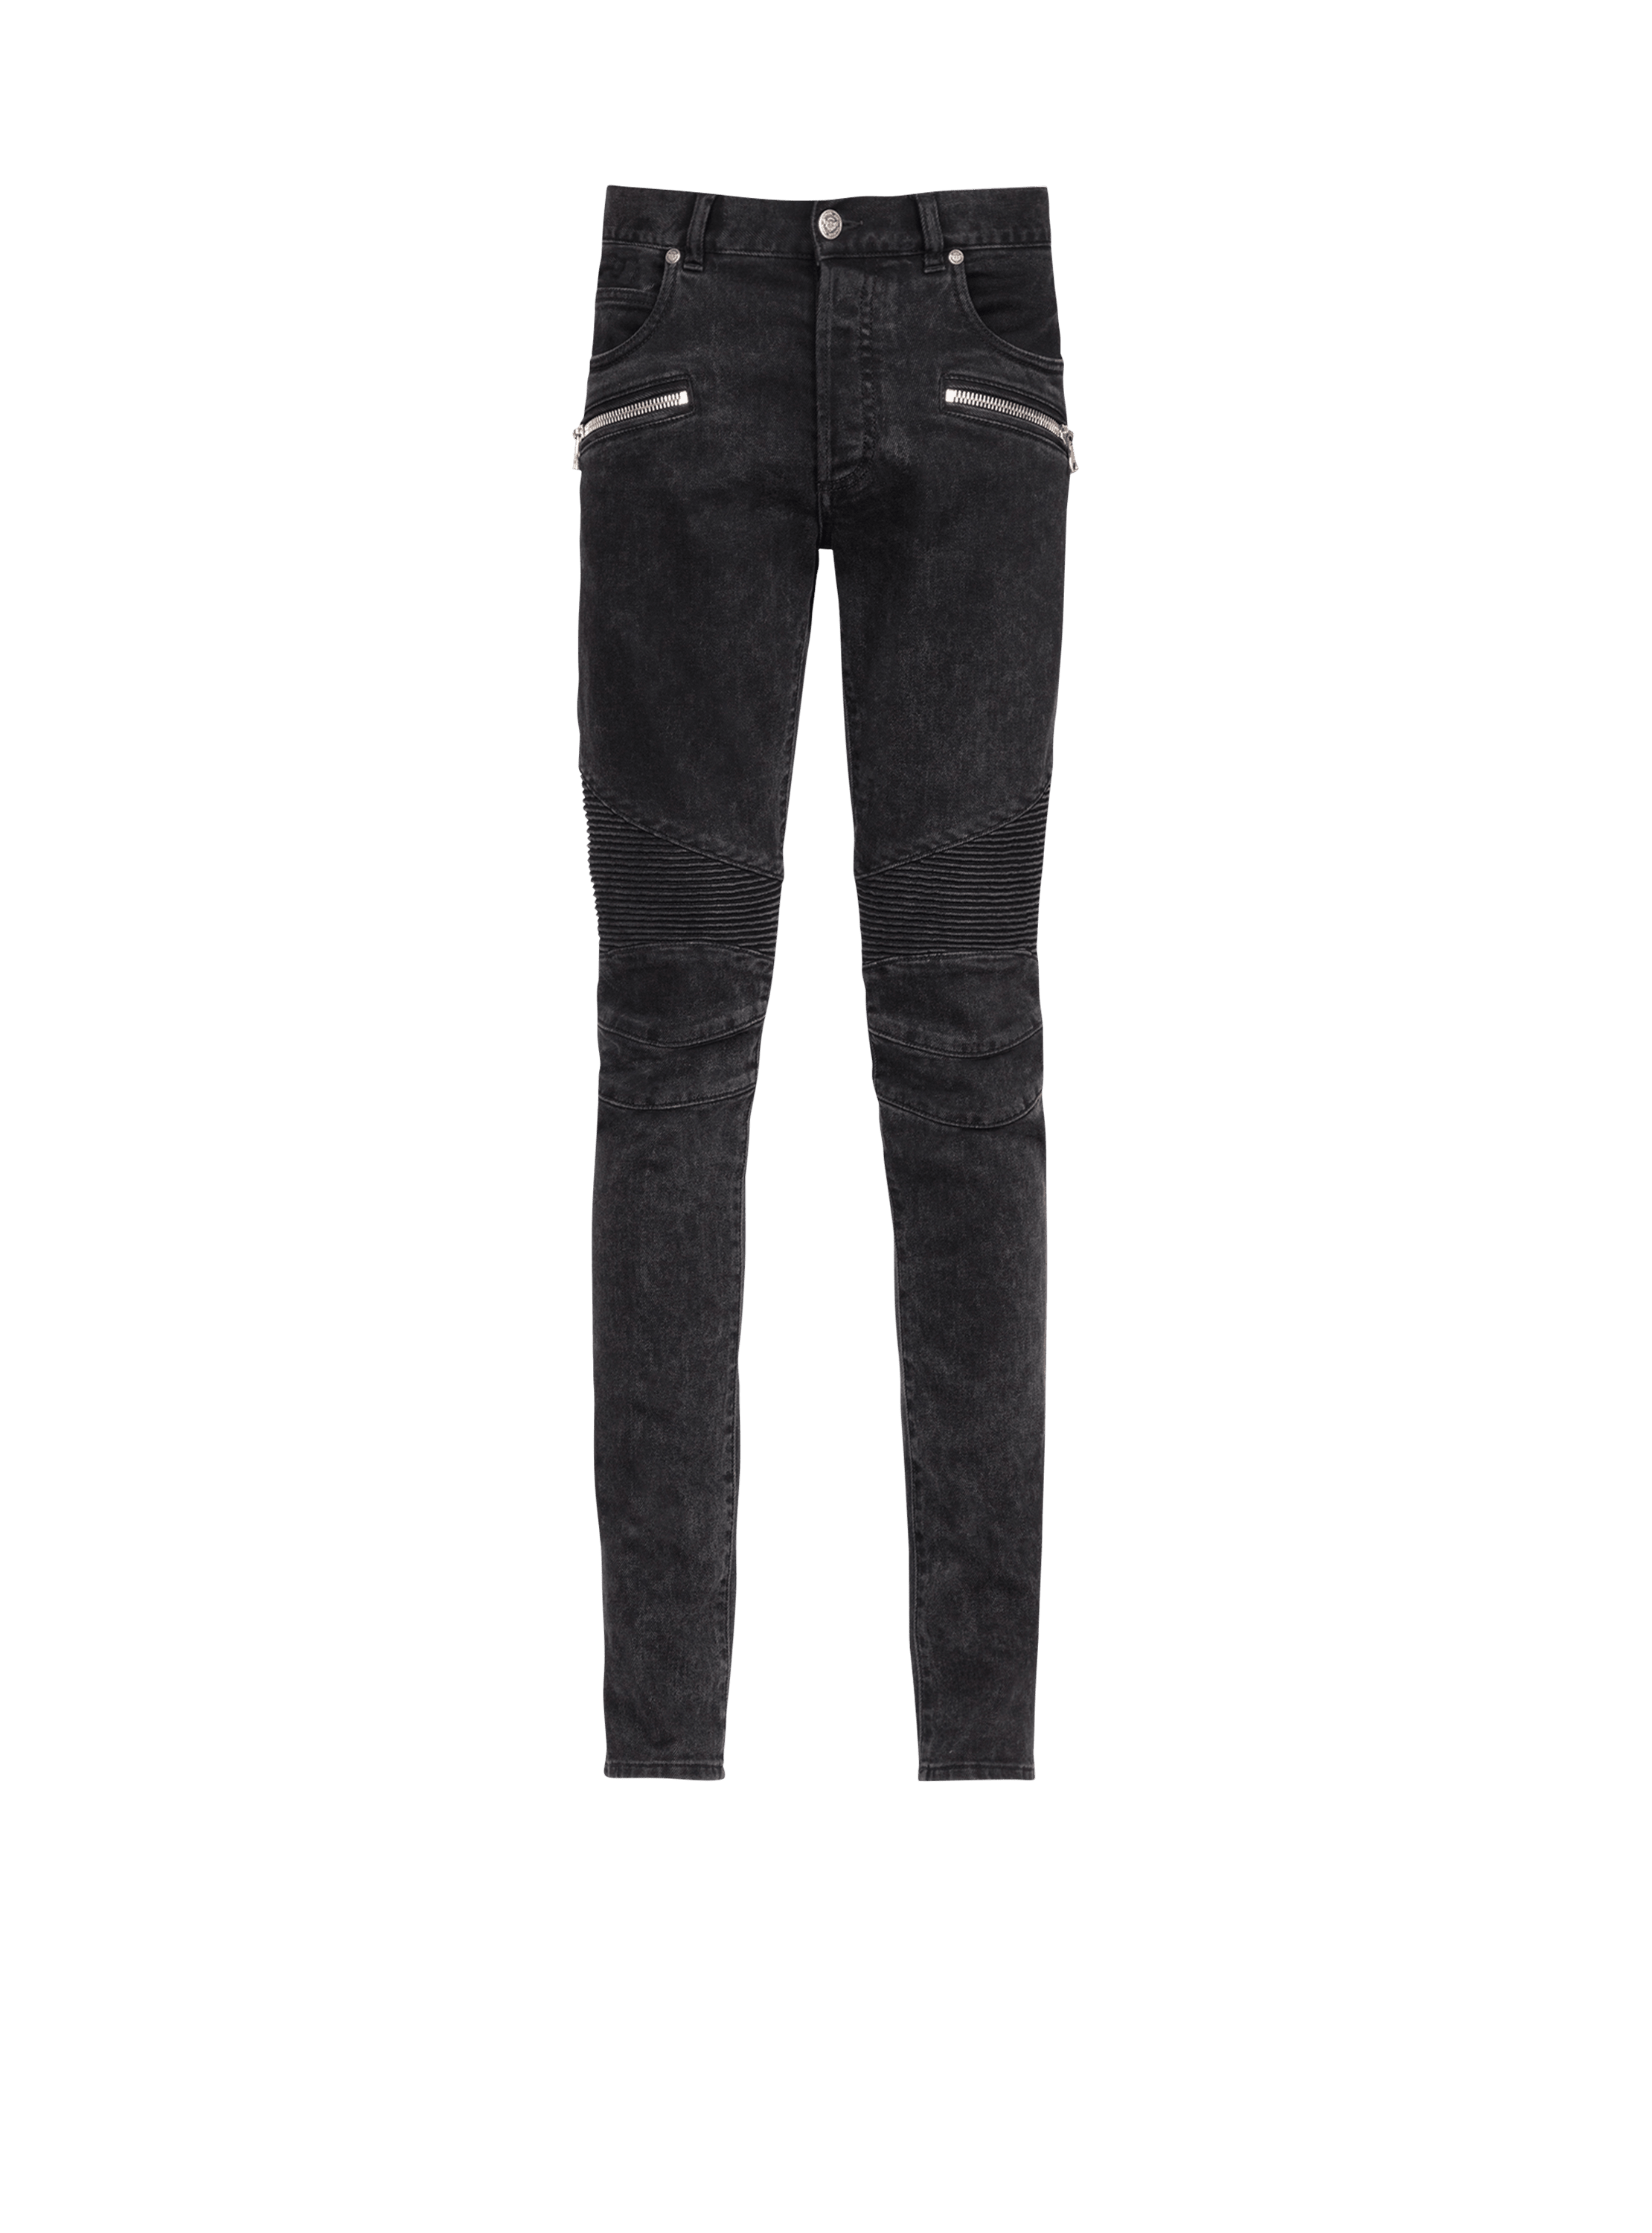 Slim cut cotton jeans, black, hi-res